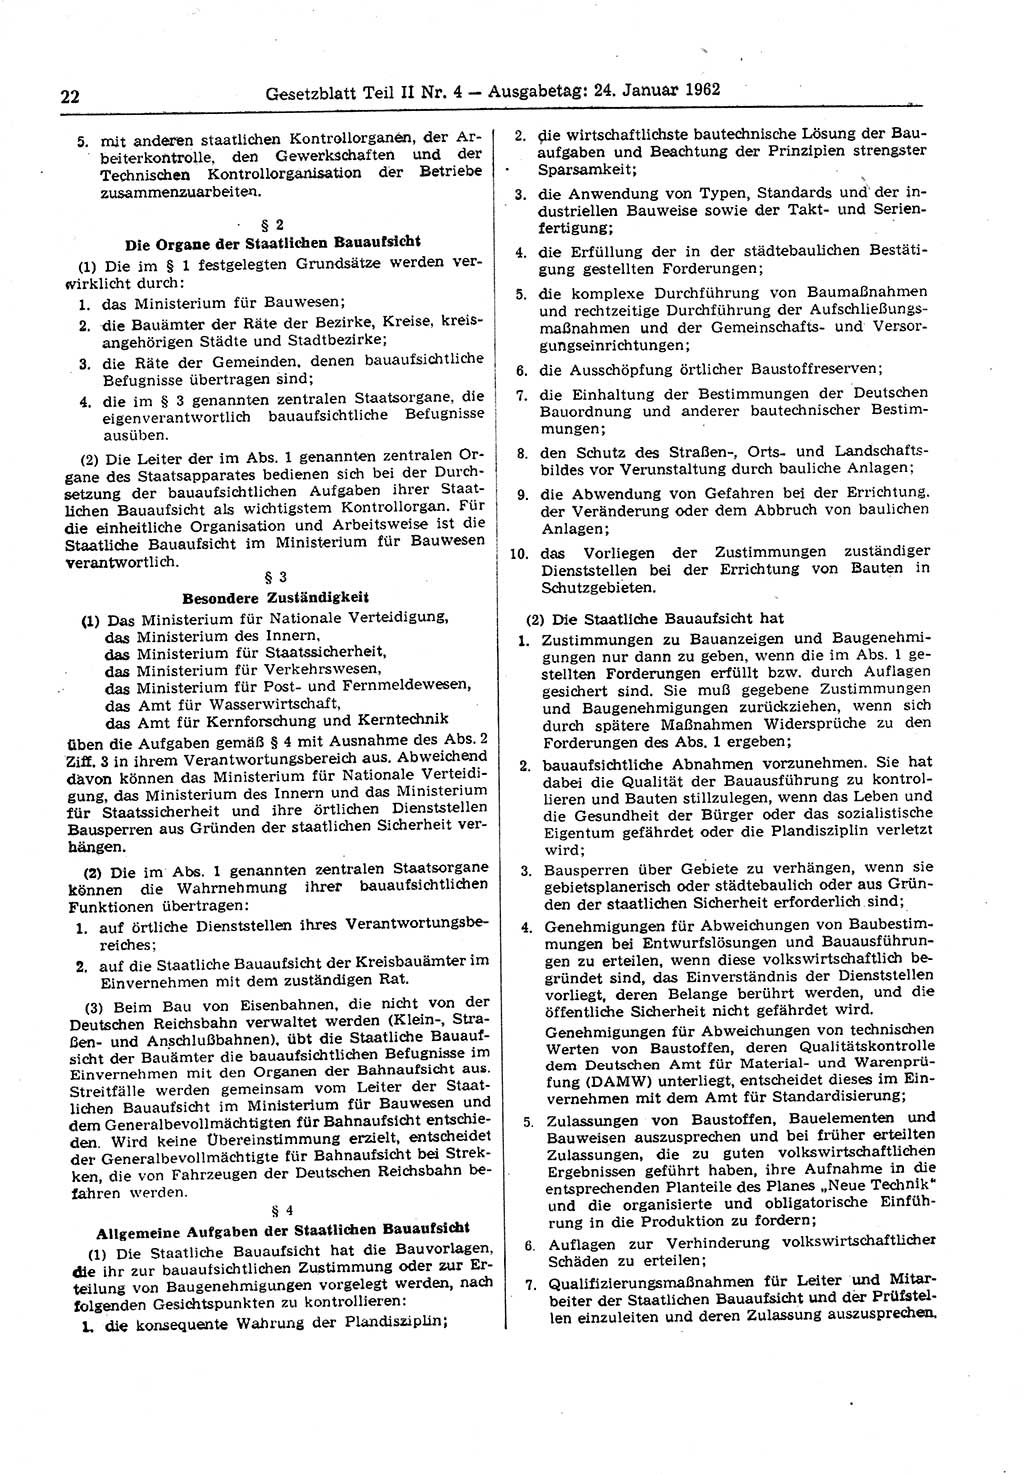 Gesetzblatt (GBl.) der Deutschen Demokratischen Republik (DDR) Teil ⅠⅠ 1962, Seite 22 (GBl. DDR ⅠⅠ 1962, S. 22)